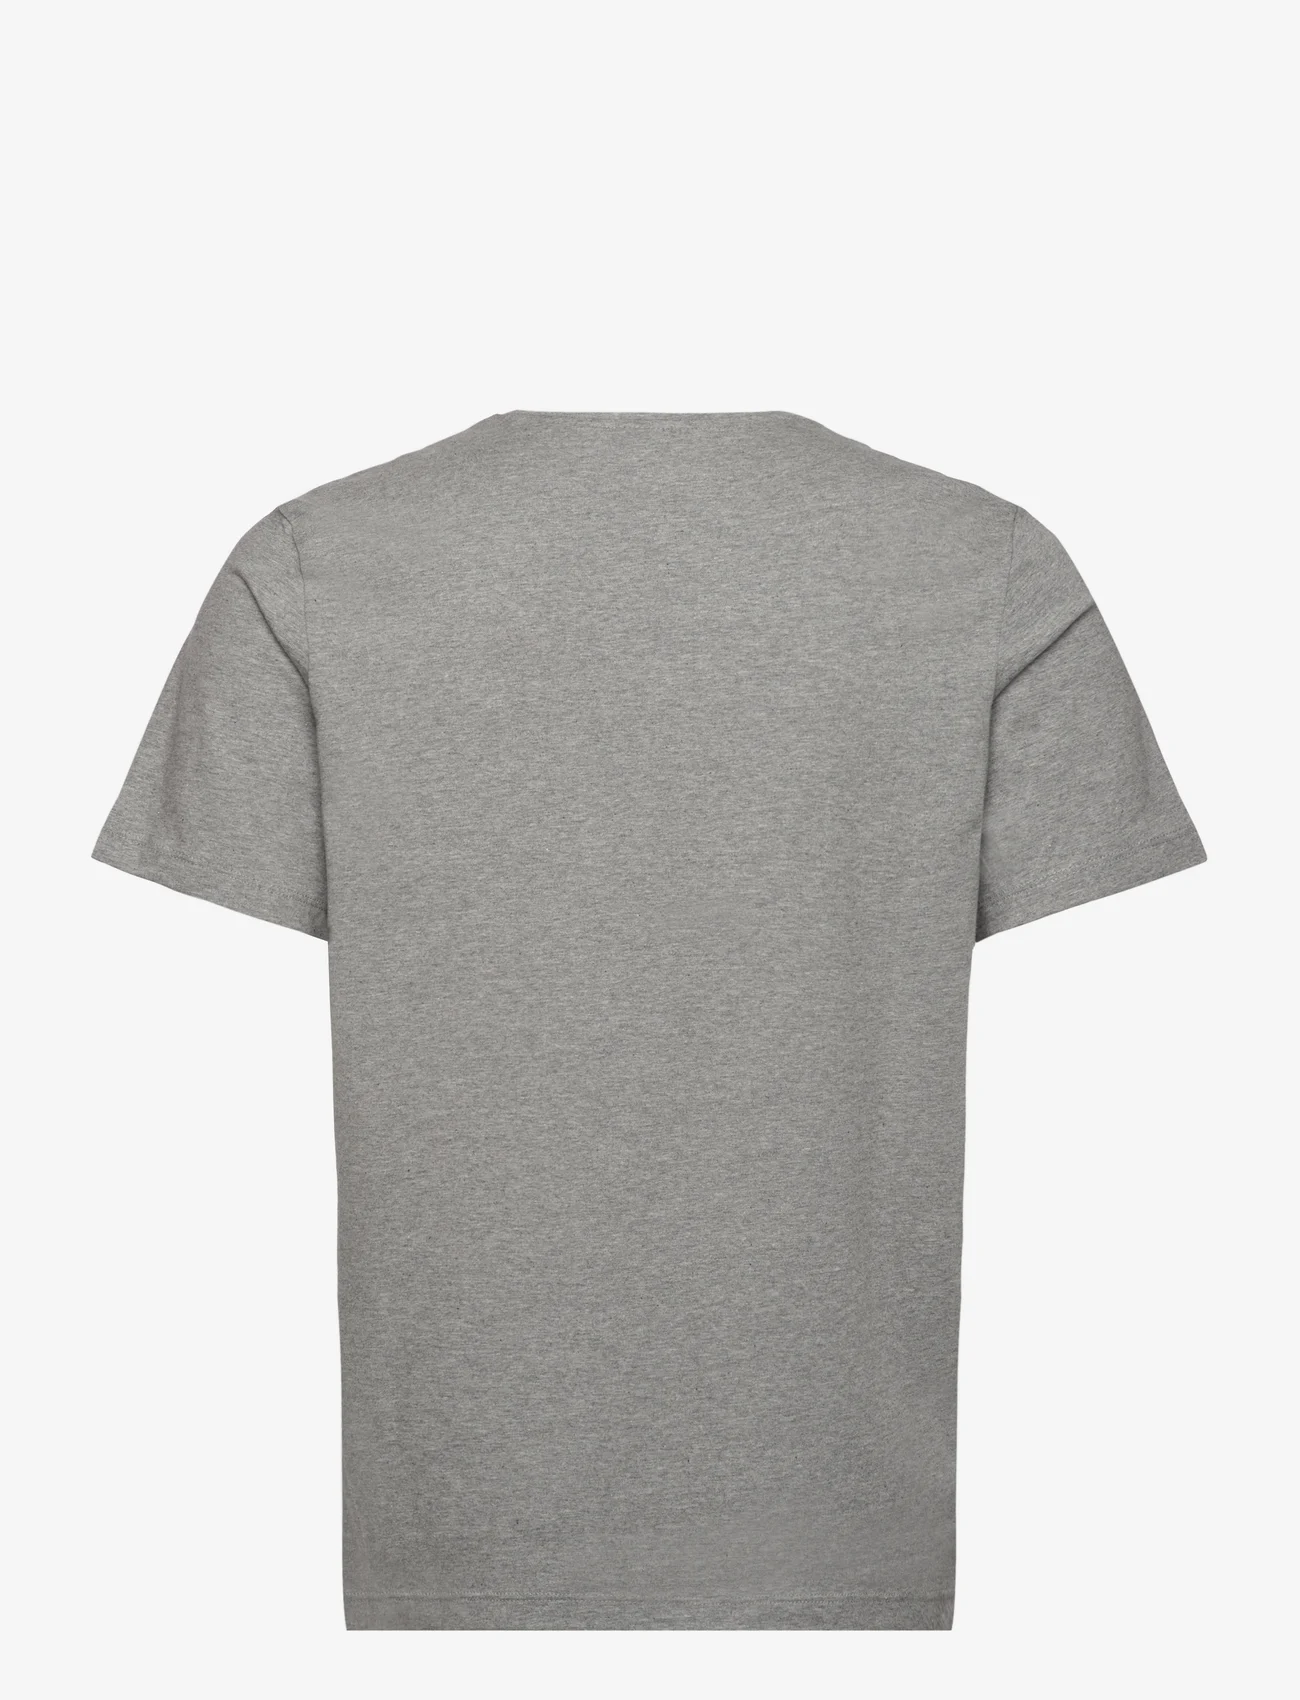 BOSS - Mix&Match T-Shirt R - zemākās cenas - medium grey - 1